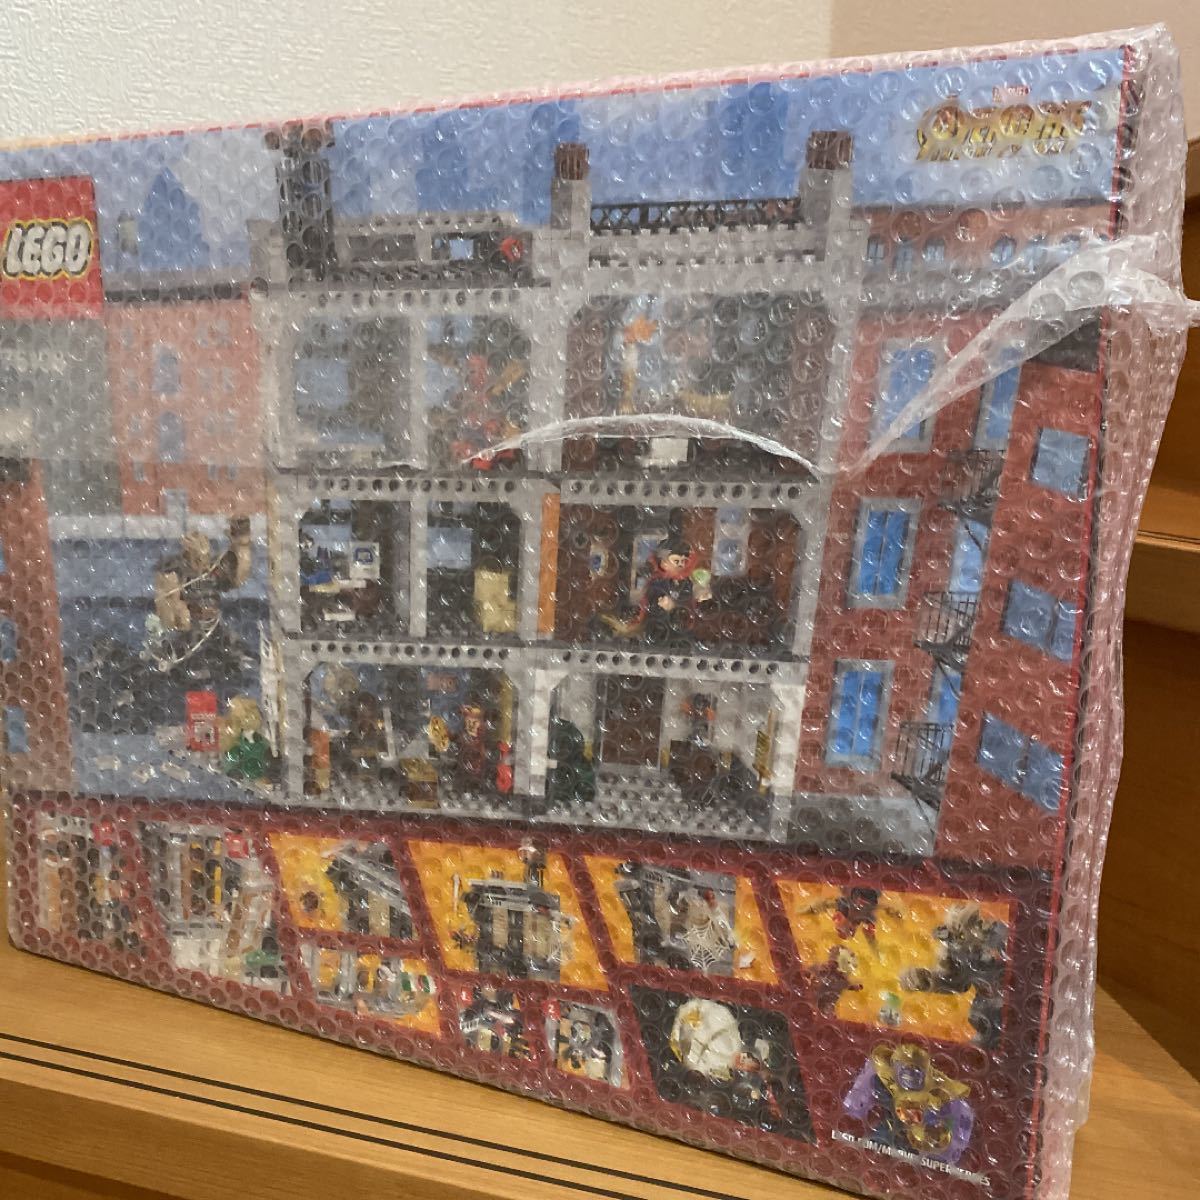 レゴ(LEGO) スーパー・ヒーローズ ドクター・ストレンジの神聖な館での戦い 76108